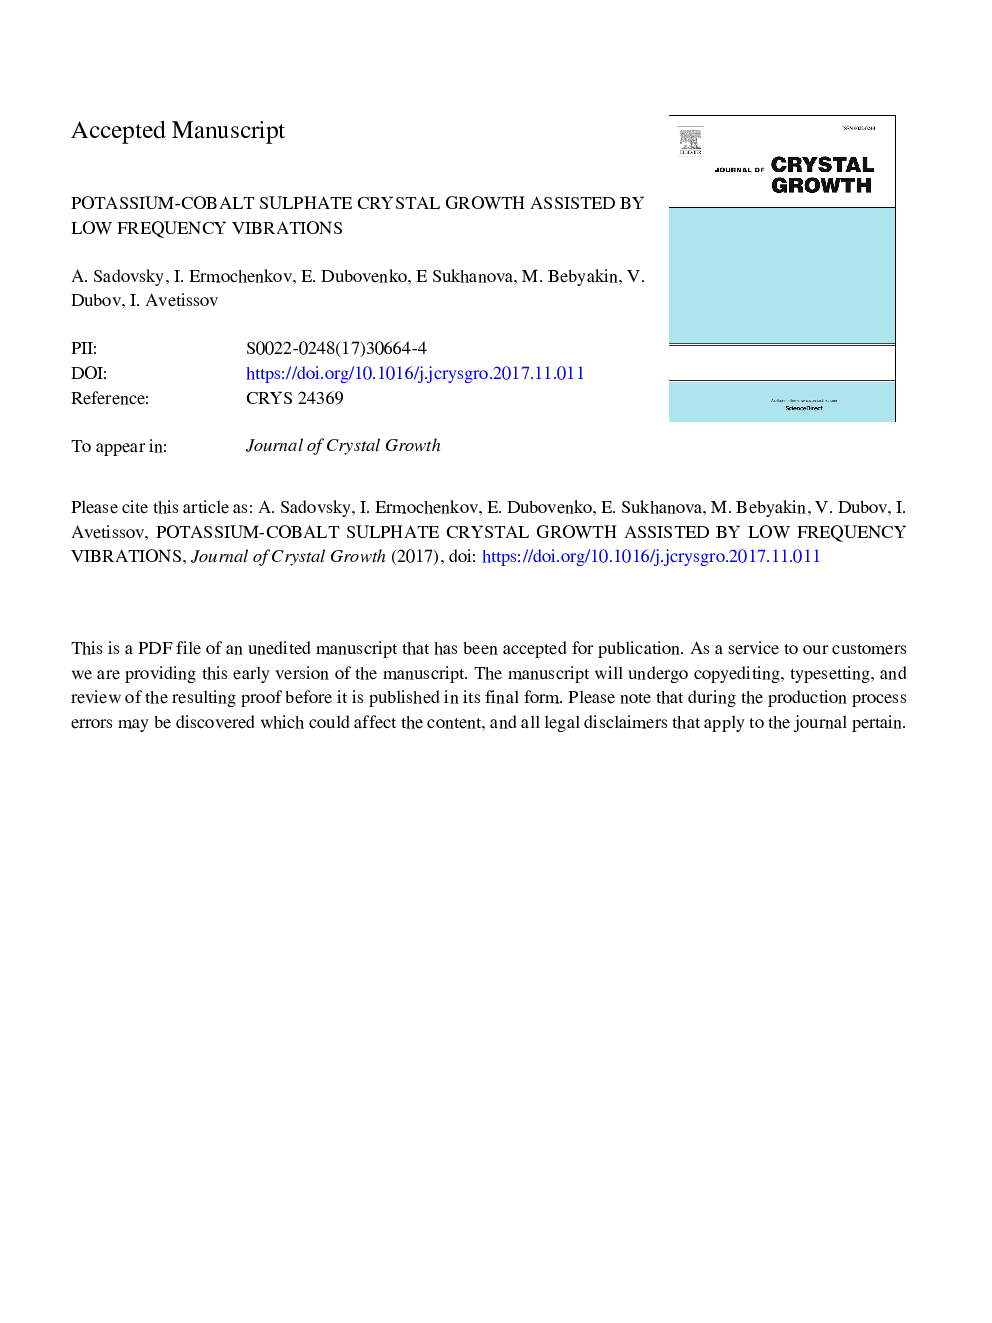 رشد کریستال سولفات پتاسیم-کبالت به وسیله ارتعاش فرکانس پایین کمک می کند 